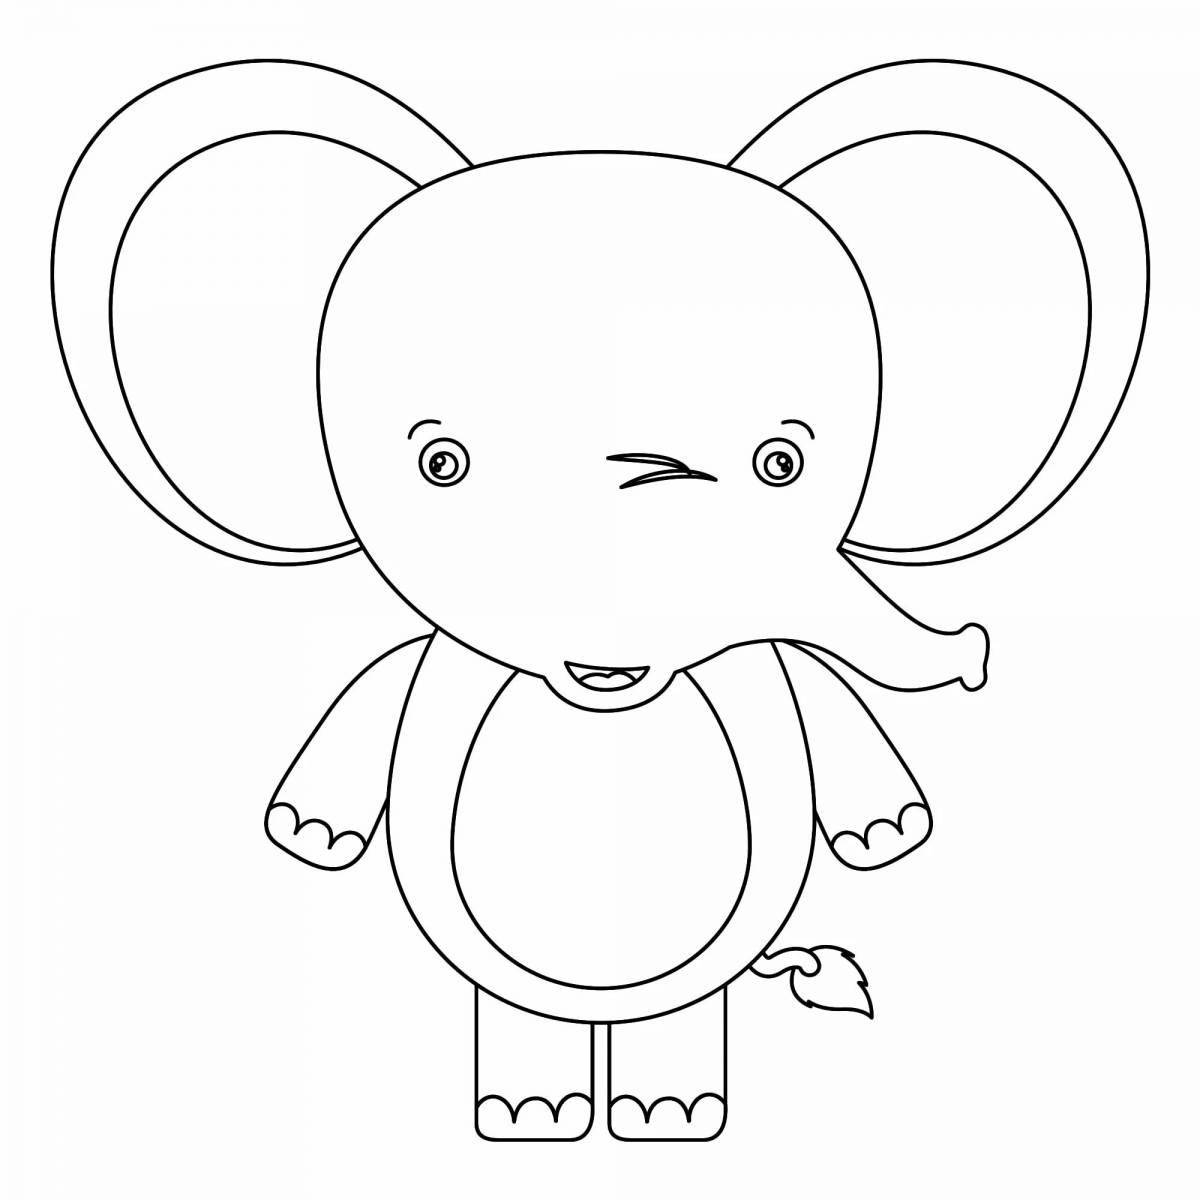 Яркая раскраска слона для детей 3-4 лет